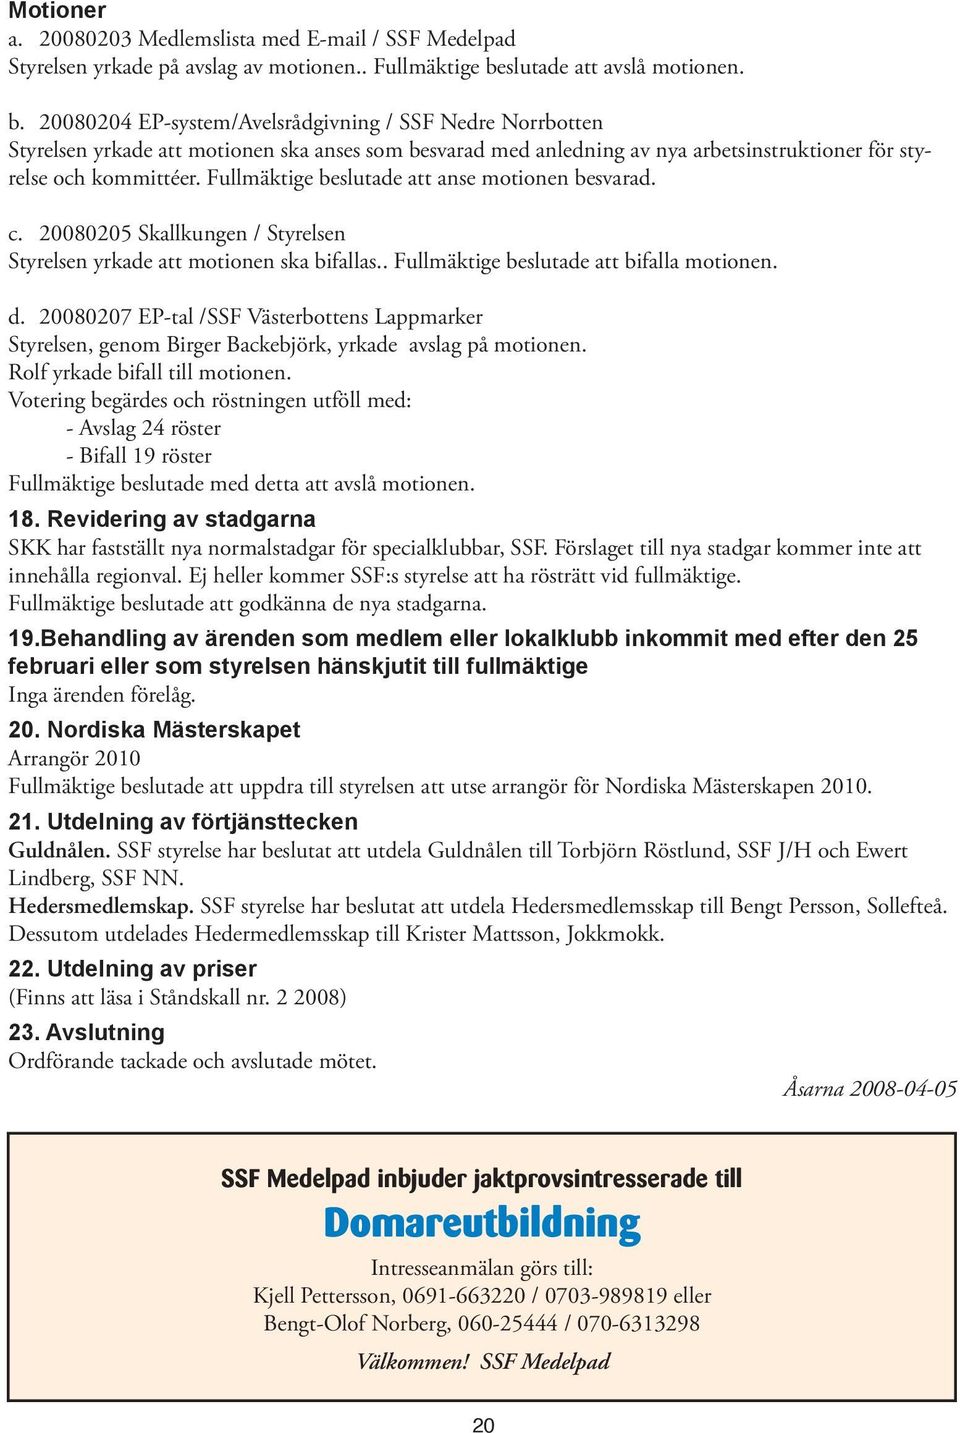 20080204 EP-system/Avelsrådgivning / SSF Nedre Norrbotten Styrelsen yrkade att motionen ska anses som besvarad med anledning av nya arbetsinstruktioner för styrelse och kommittéer.